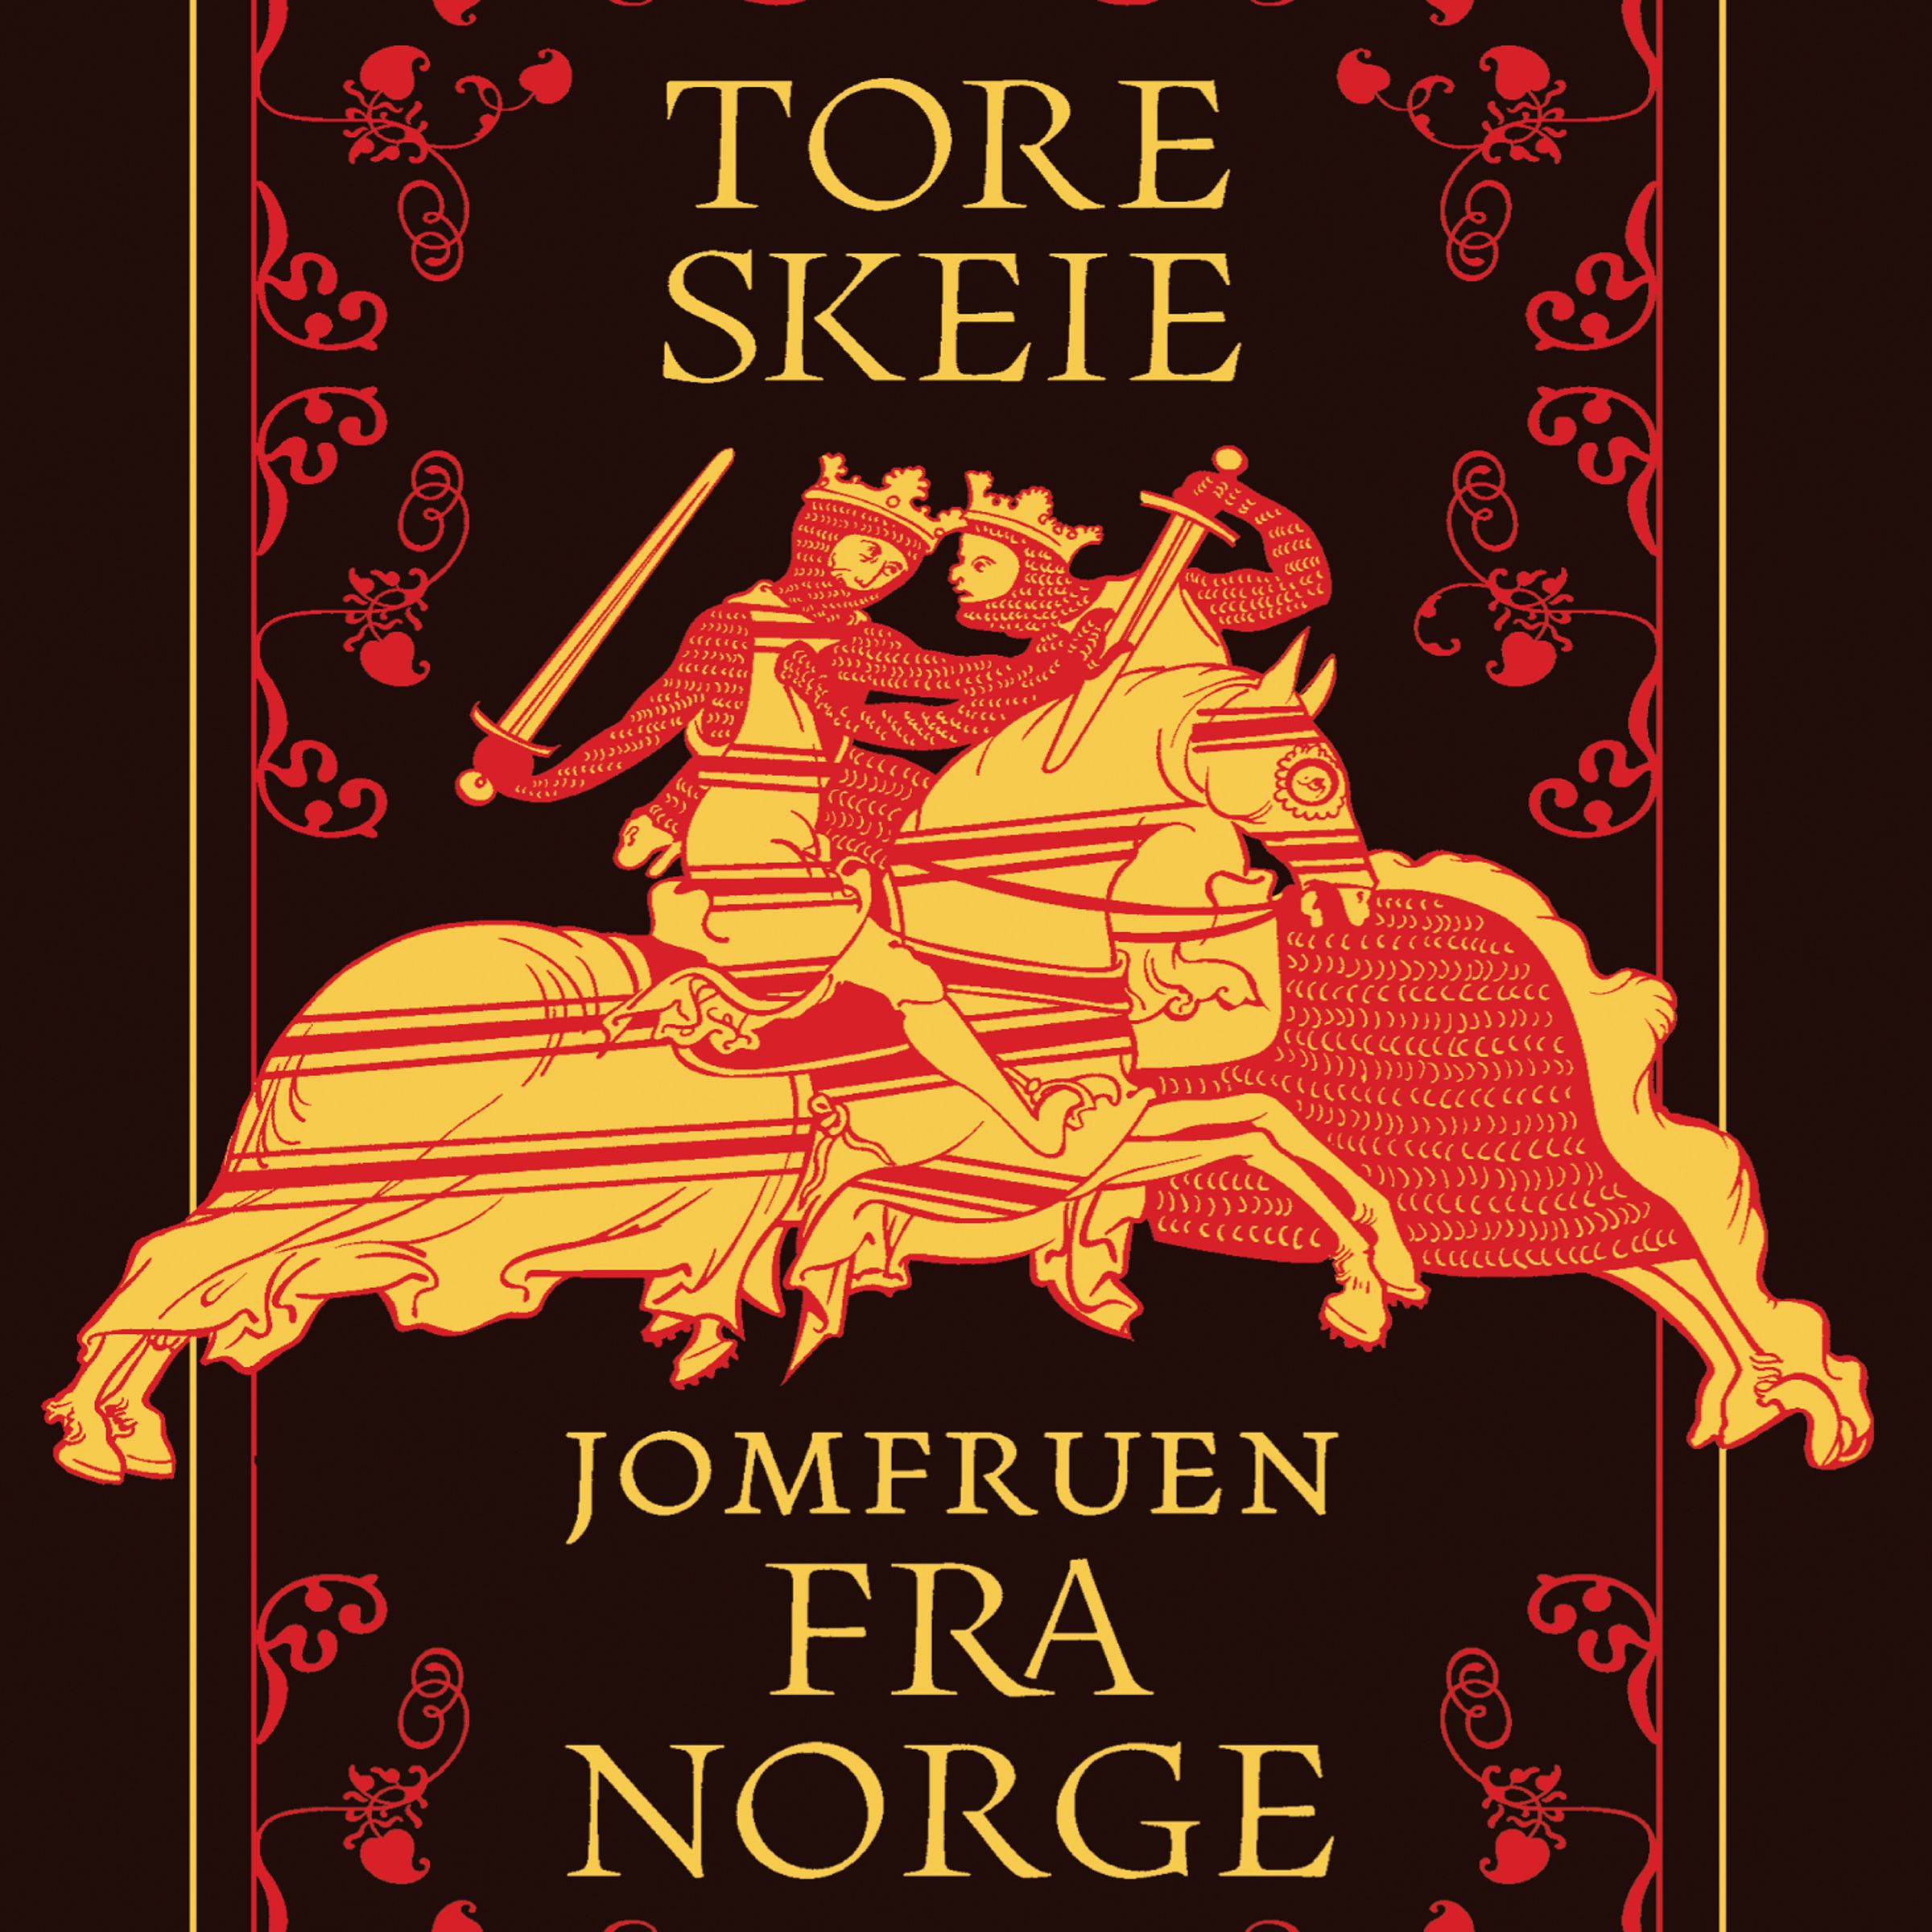 Jomfruen fra Norge, ljudbok av Tore Skeie